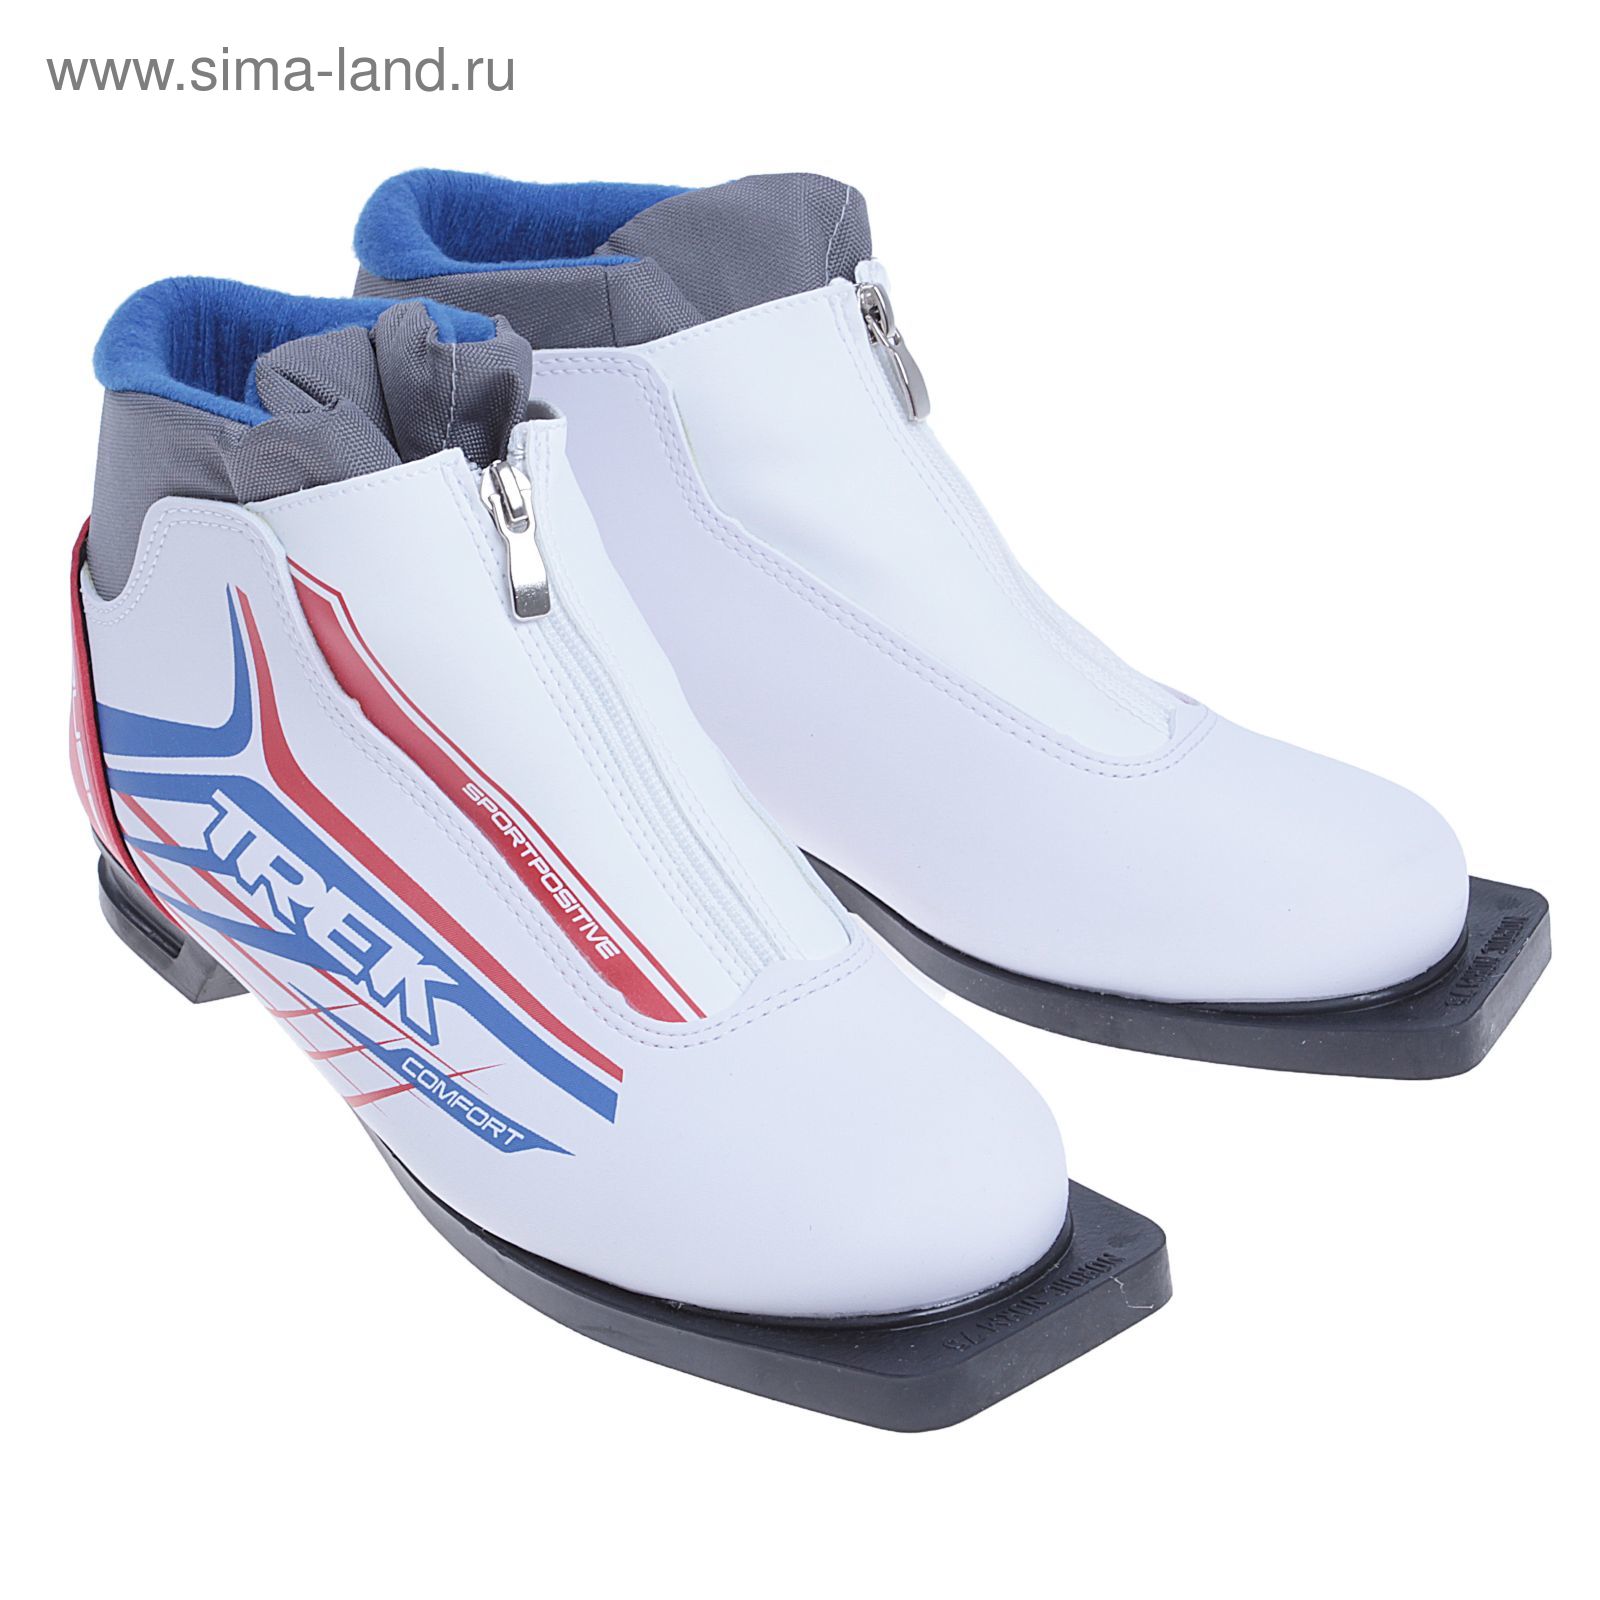 Ботинки лыжные TREK Russia Comfort NN 75 ИК (белый, лого красный) (р.40)